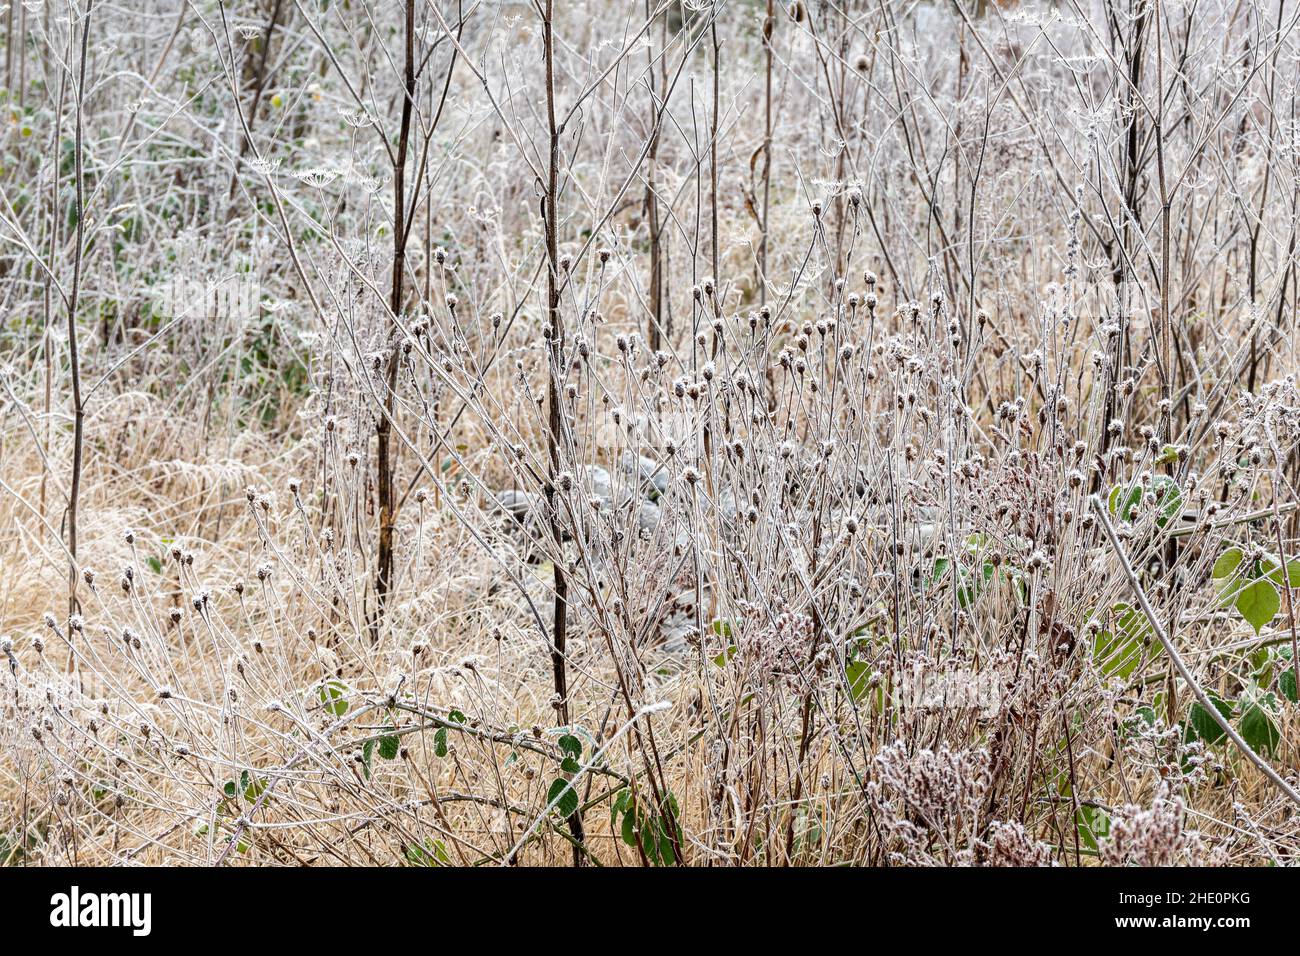 Vue d'hiver de la réserve naturelle de Bartley Heath avec fleurs sauvages couvertes de gel et plantes avec têtes de graines laissées pour les oiseaux et la faune, Hampshire, Royaume-Uni Banque D'Images